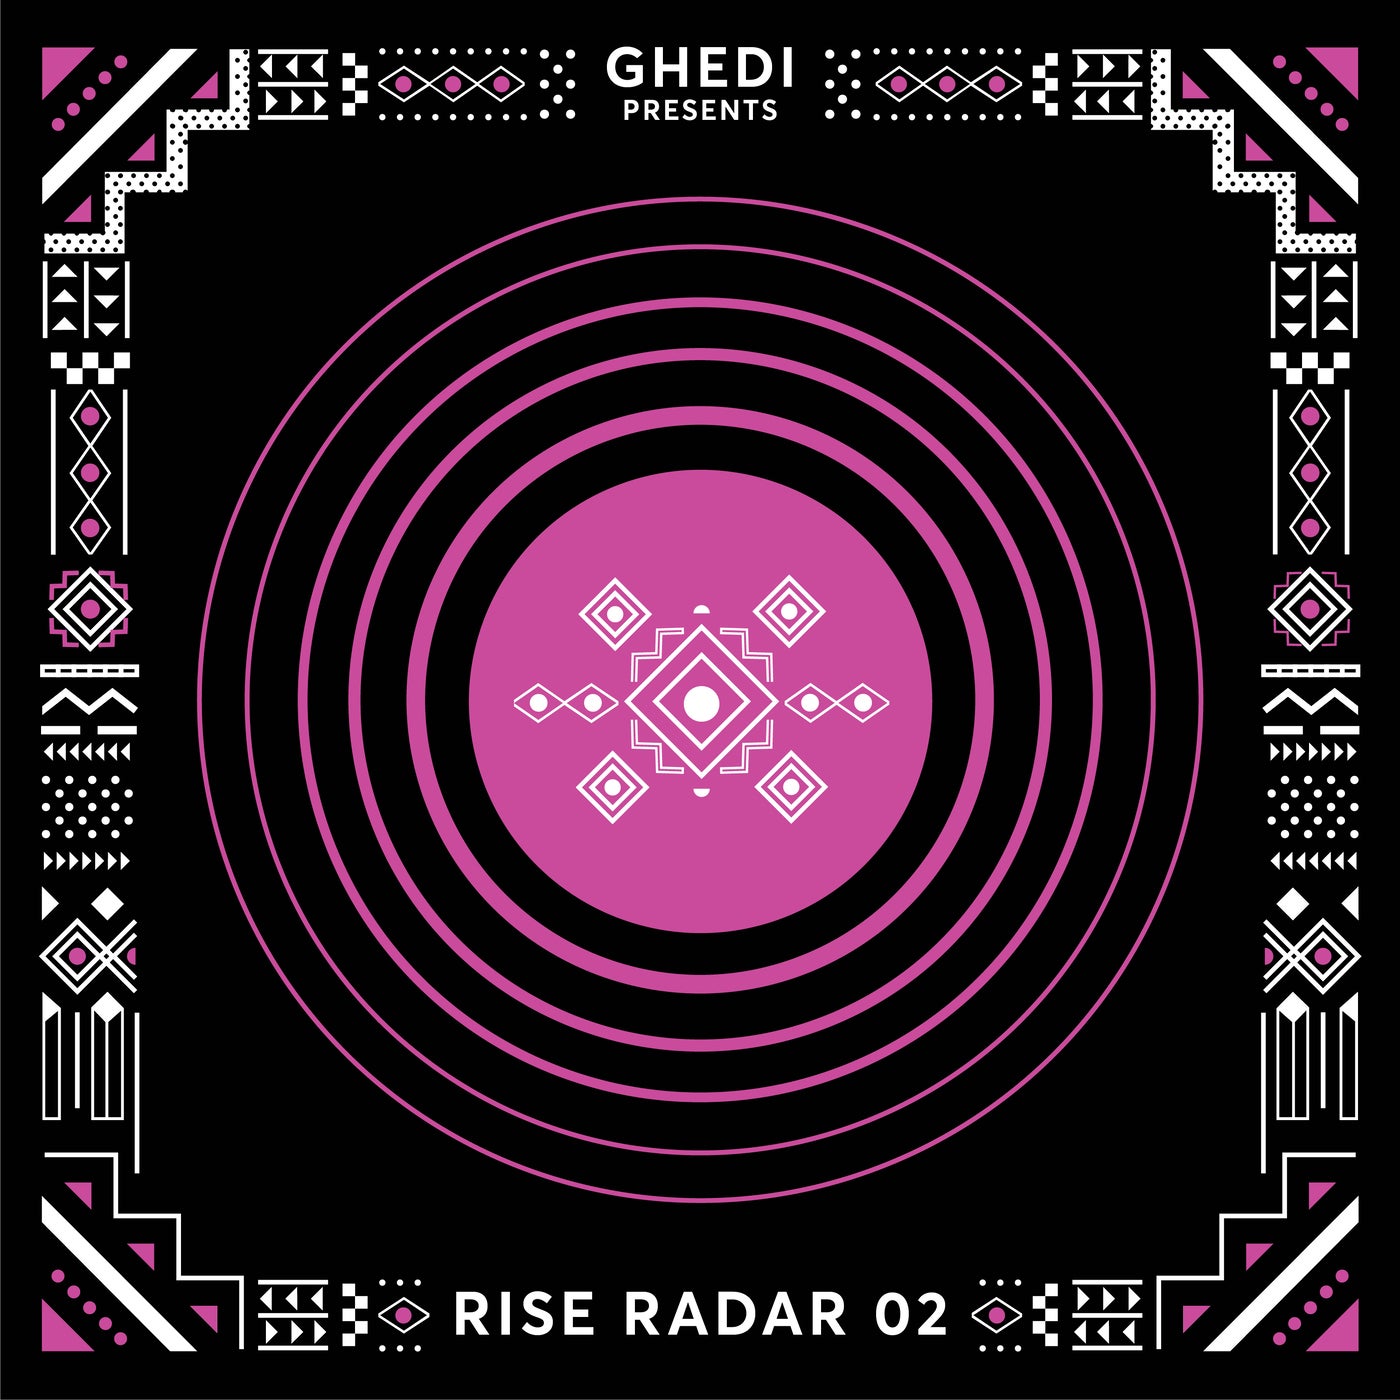 Ghedi presents RISE RADAR 02